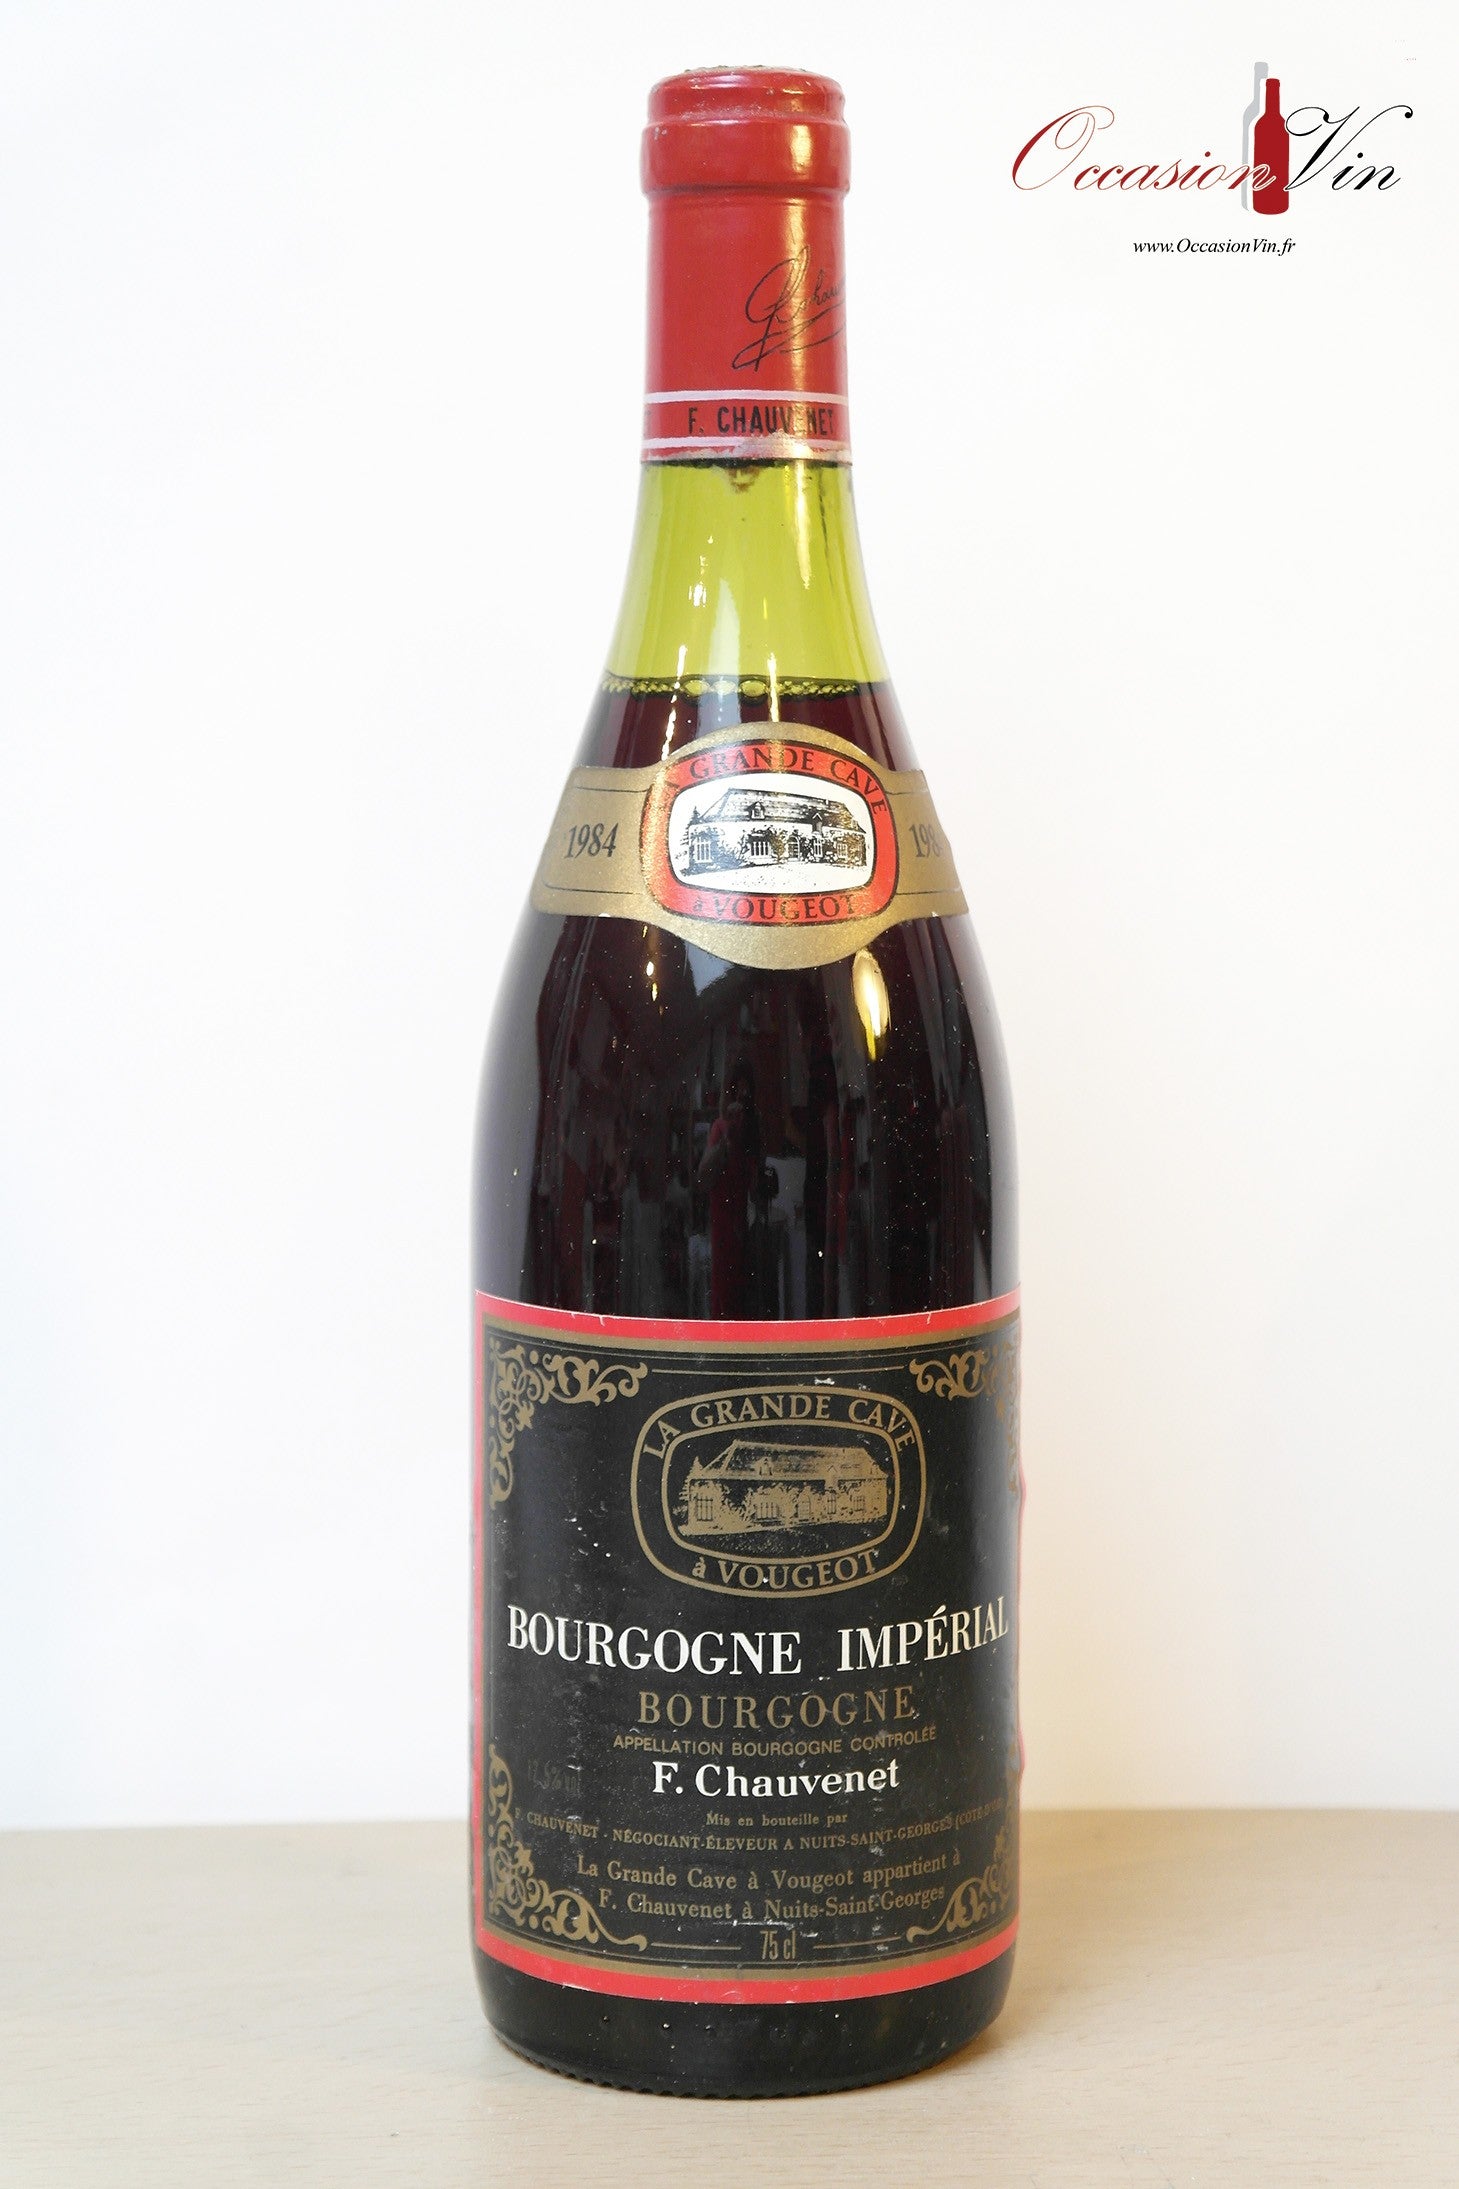 Bourgogne Impérial F Chauvenet Vin 1984